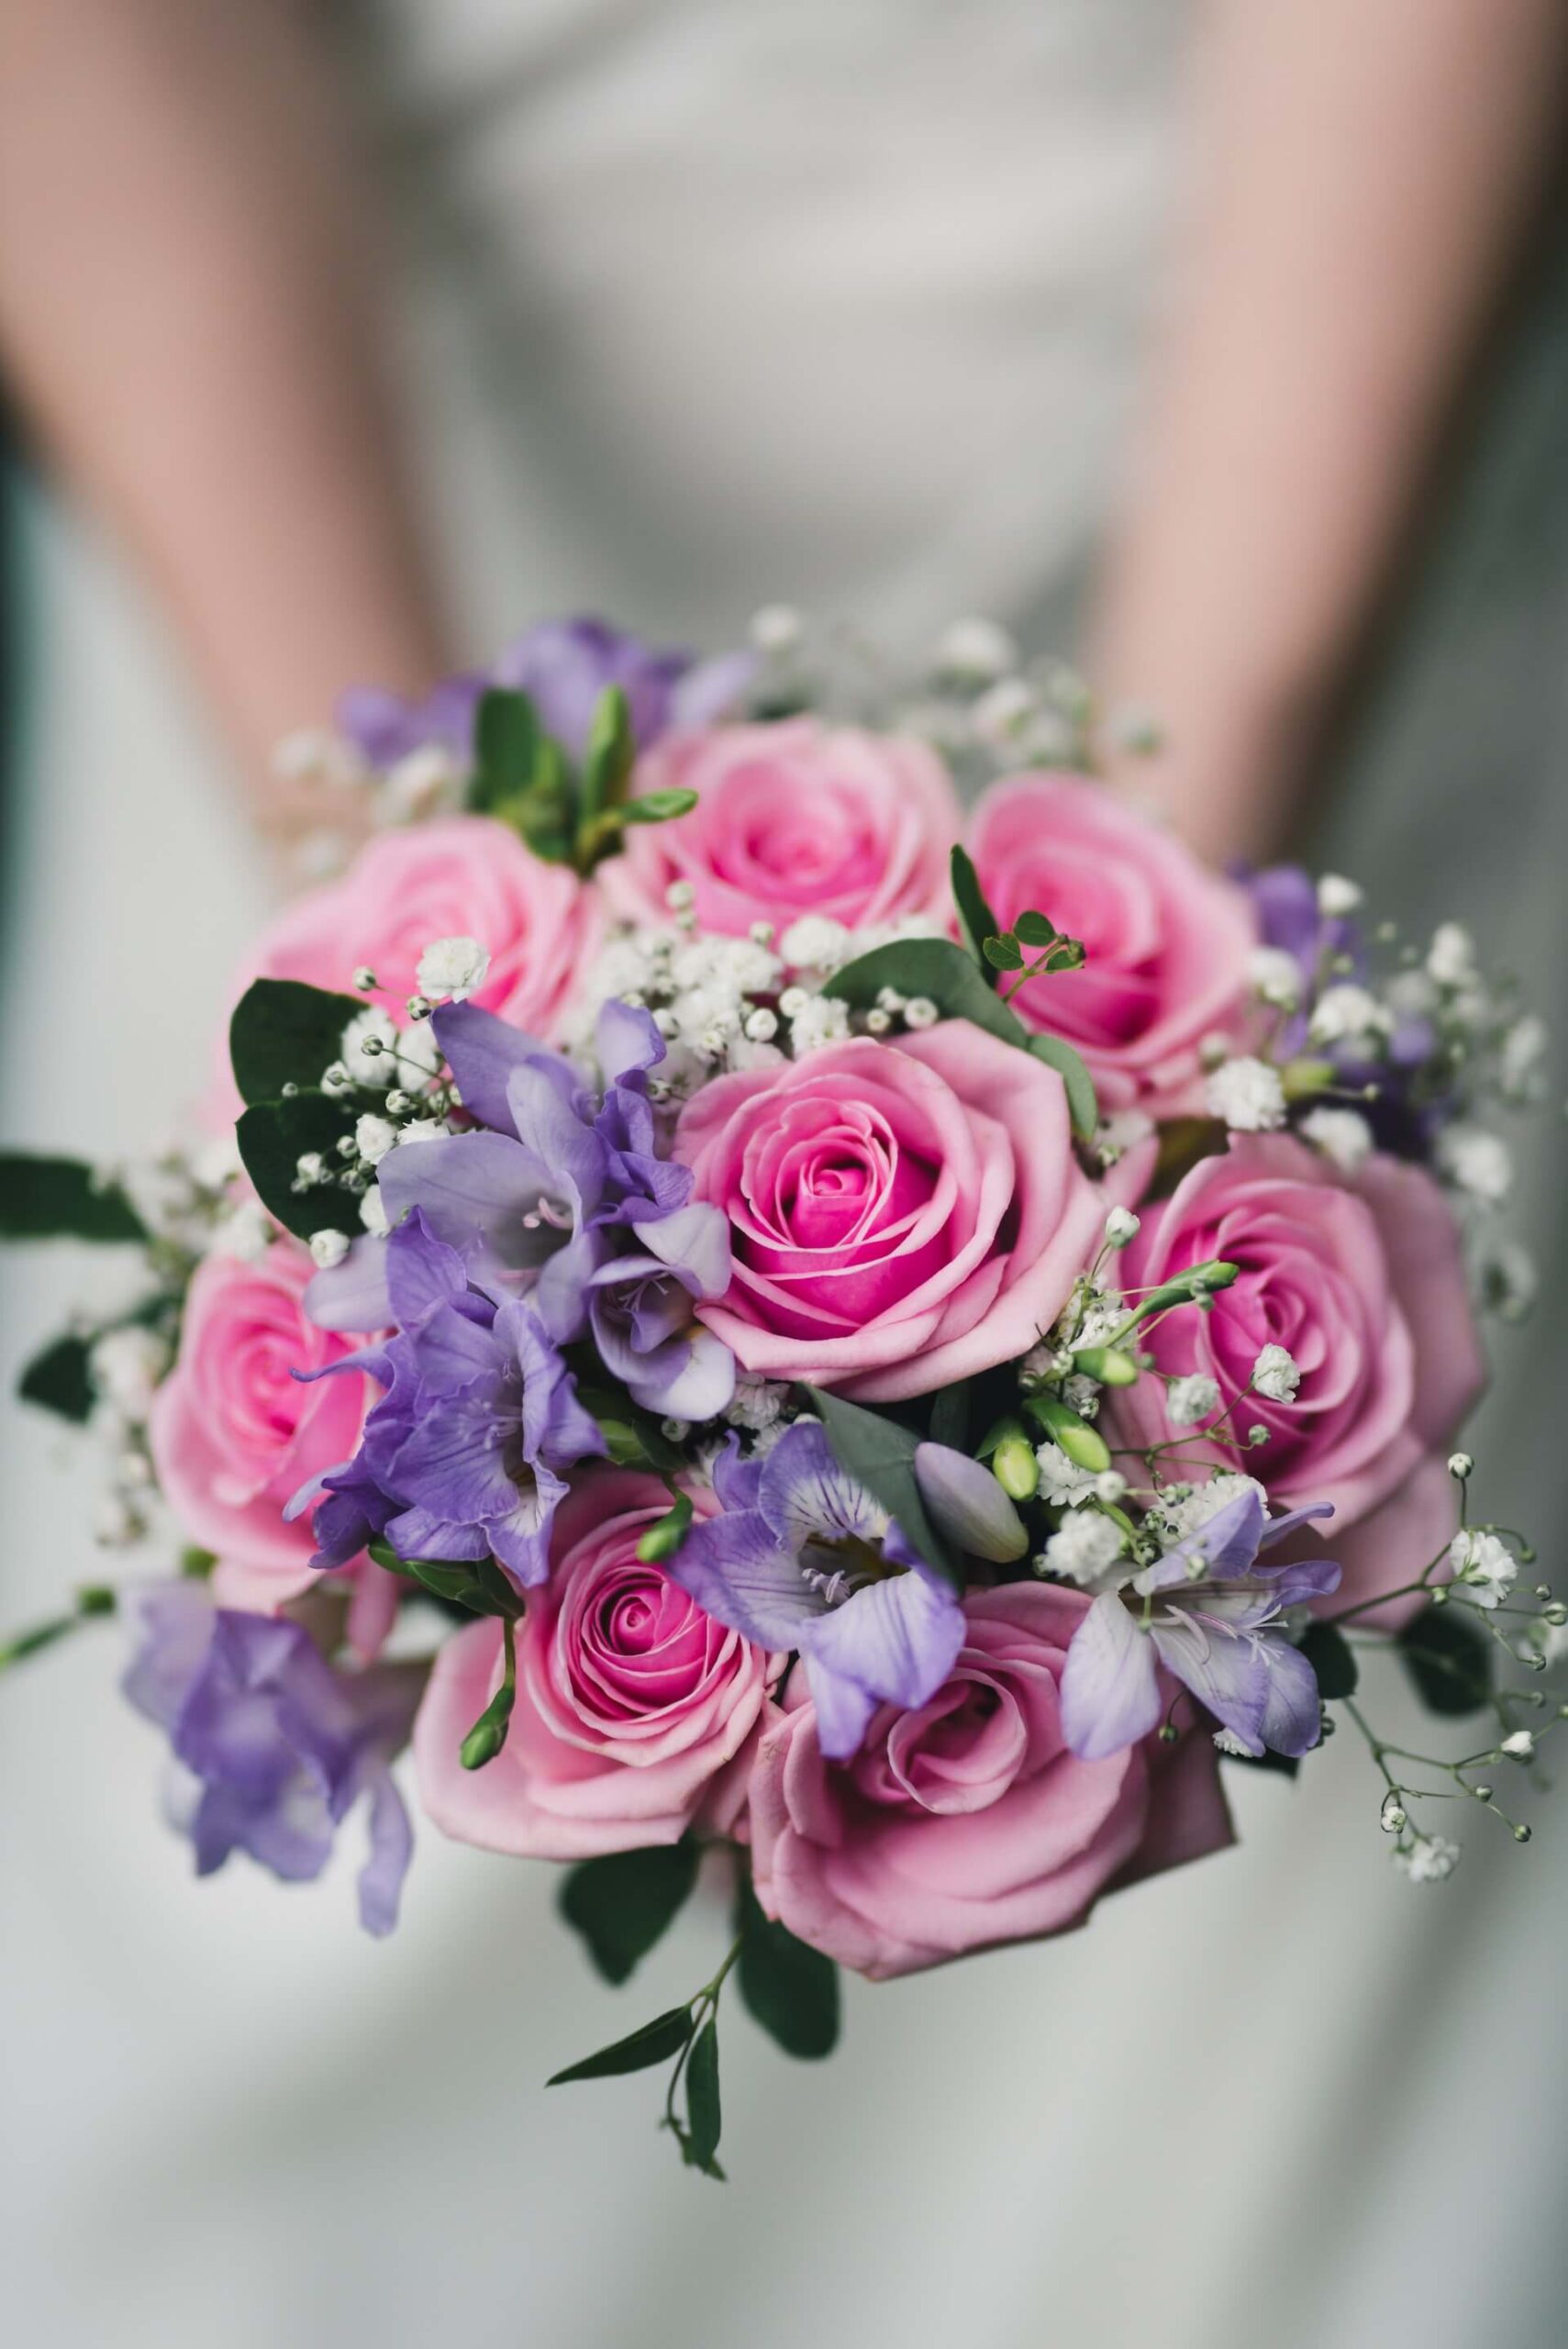 Bröllopsfoto visar färgglad blombukett i fokus hållandes av person